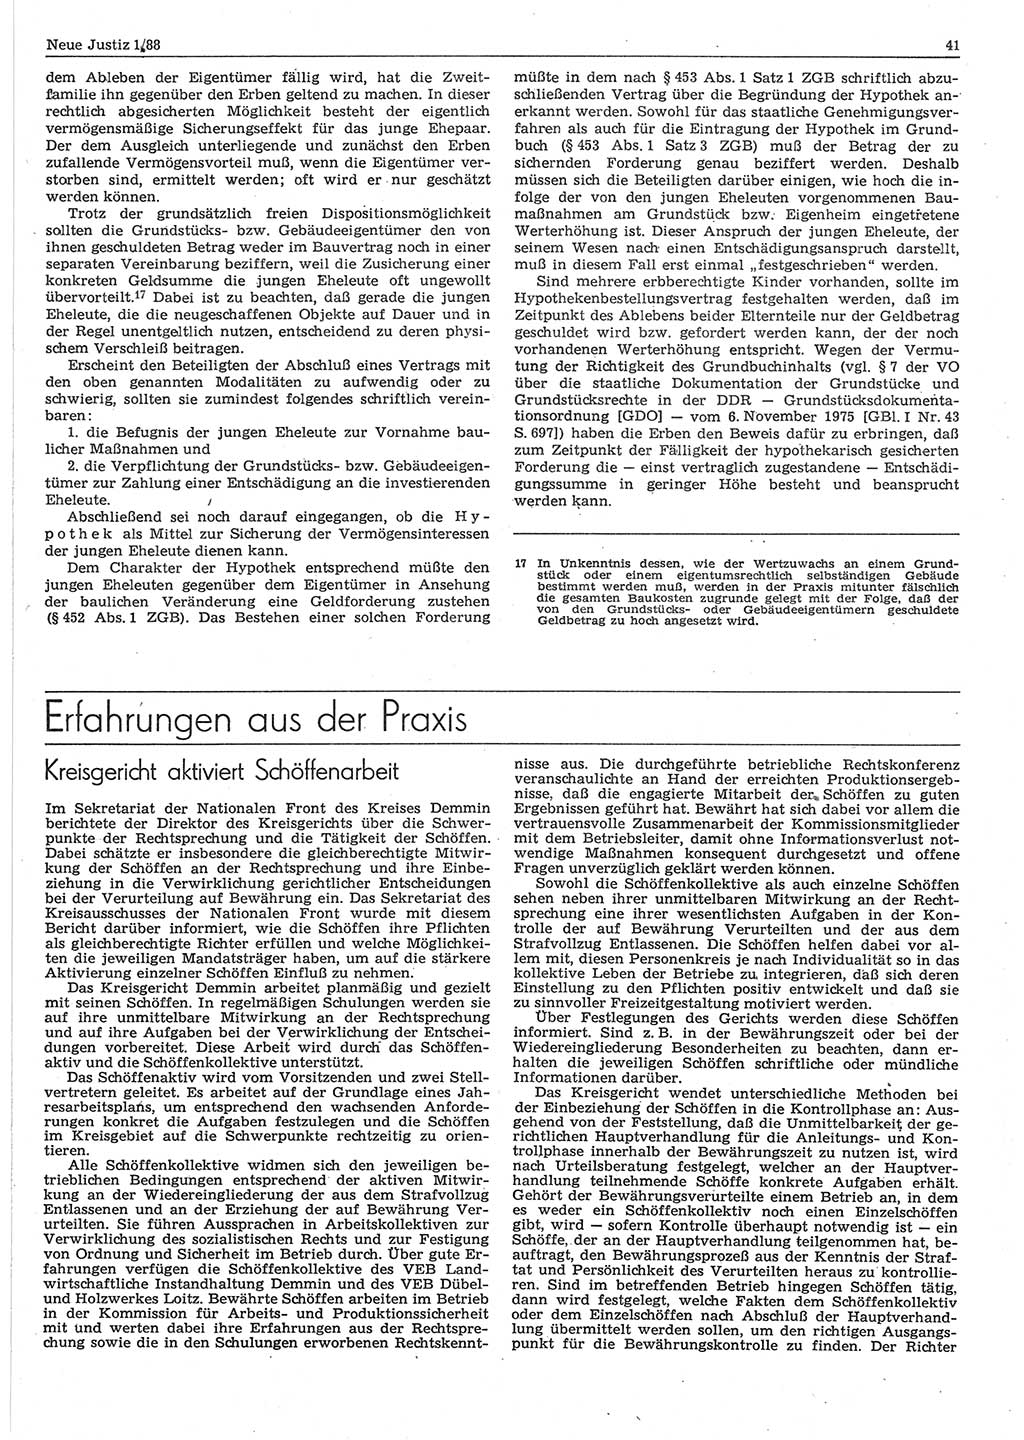 Neue Justiz (NJ), Zeitschrift für sozialistisches Recht und Gesetzlichkeit [Deutsche Demokratische Republik (DDR)], 42. Jahrgang 1988, Seite 41 (NJ DDR 1988, S. 41)